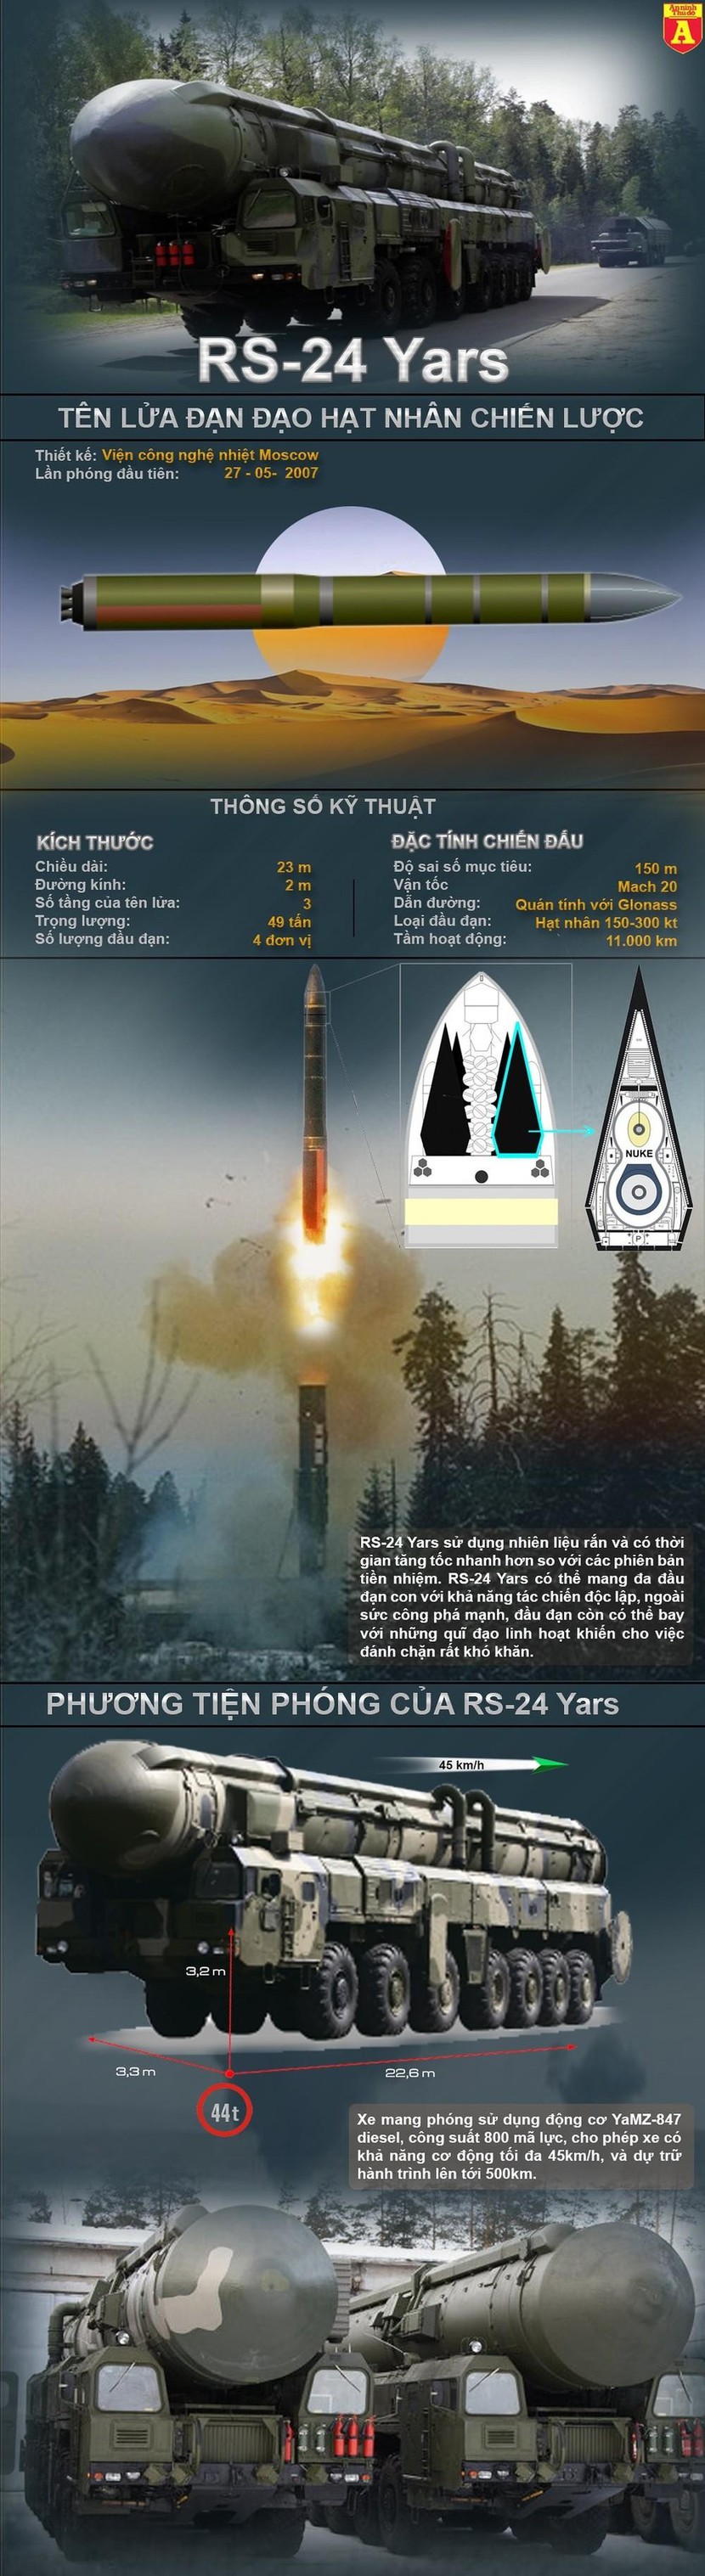 Sức mạnh kinh hoàng của tên lửa hạt nhân RS-24 Yars Nga vừa phóng - Ảnh 1.